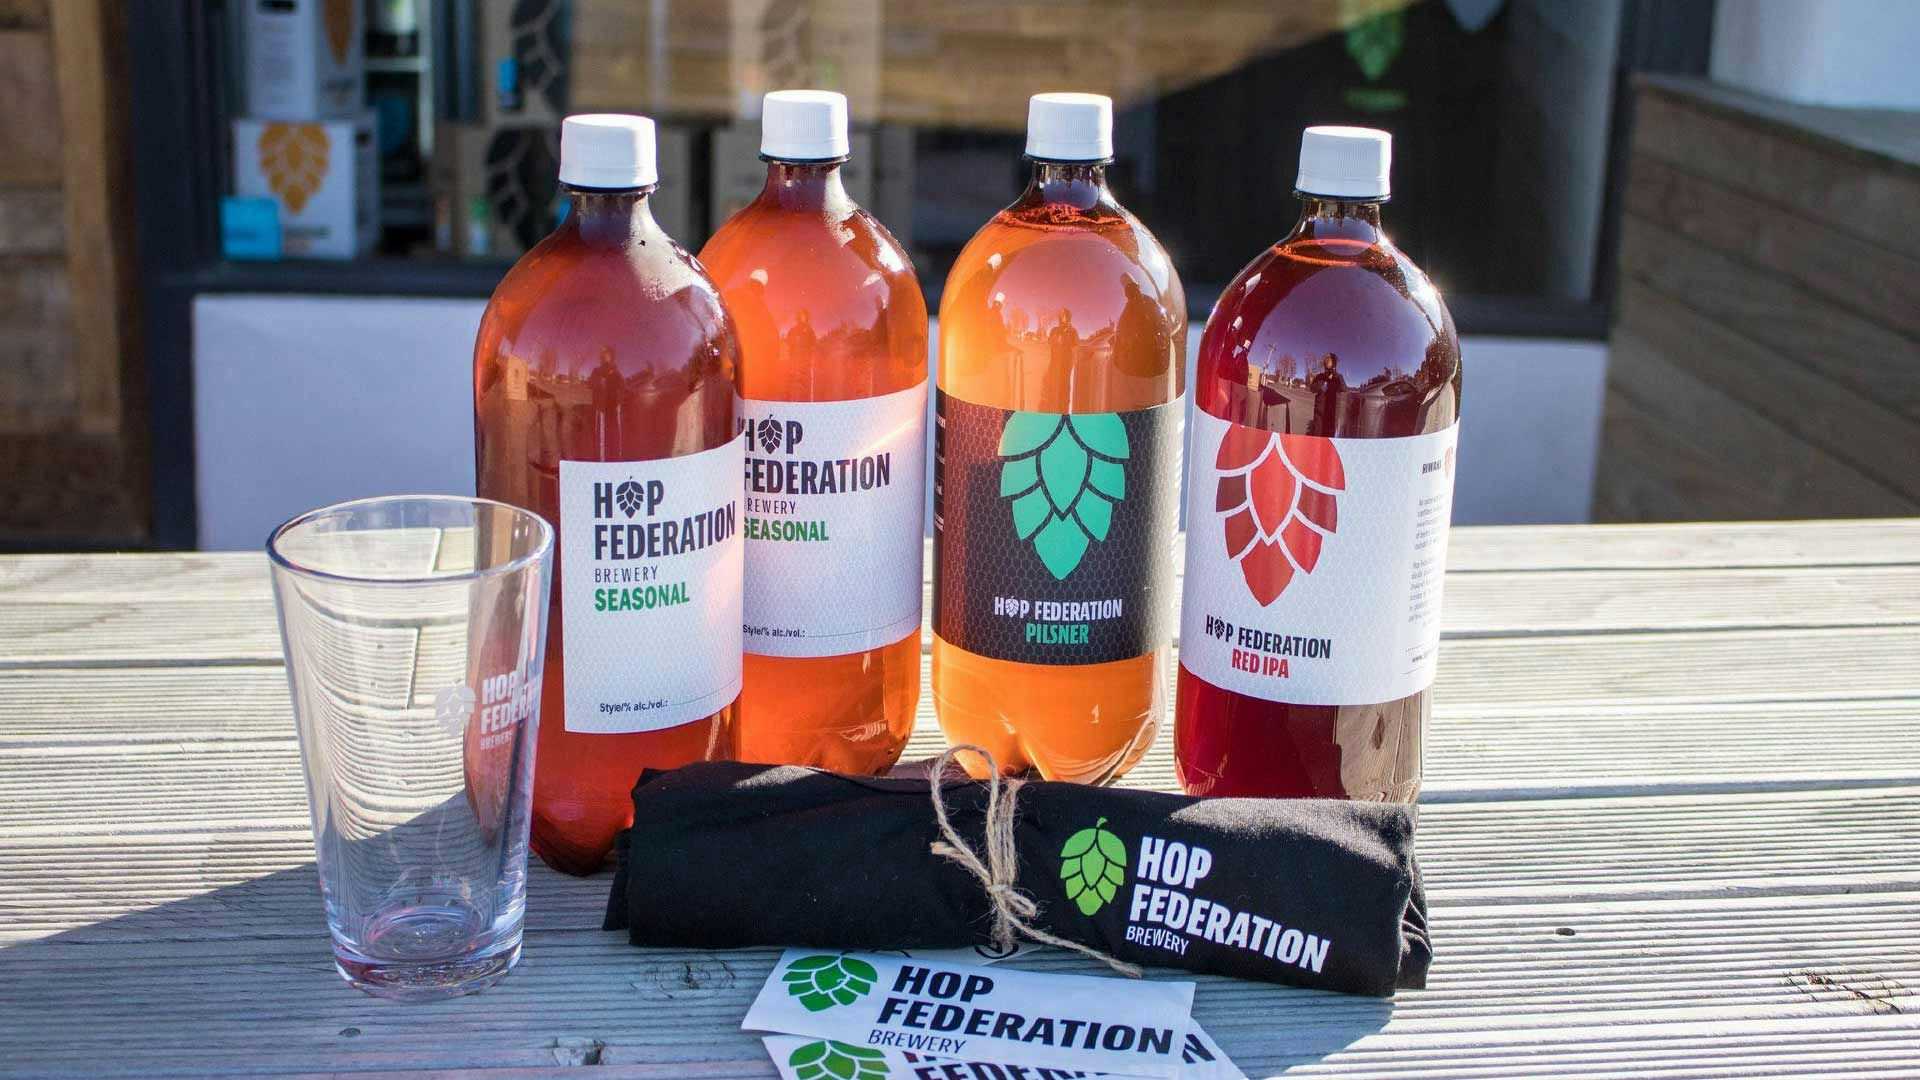 Line up of Hop Federation beer bottles